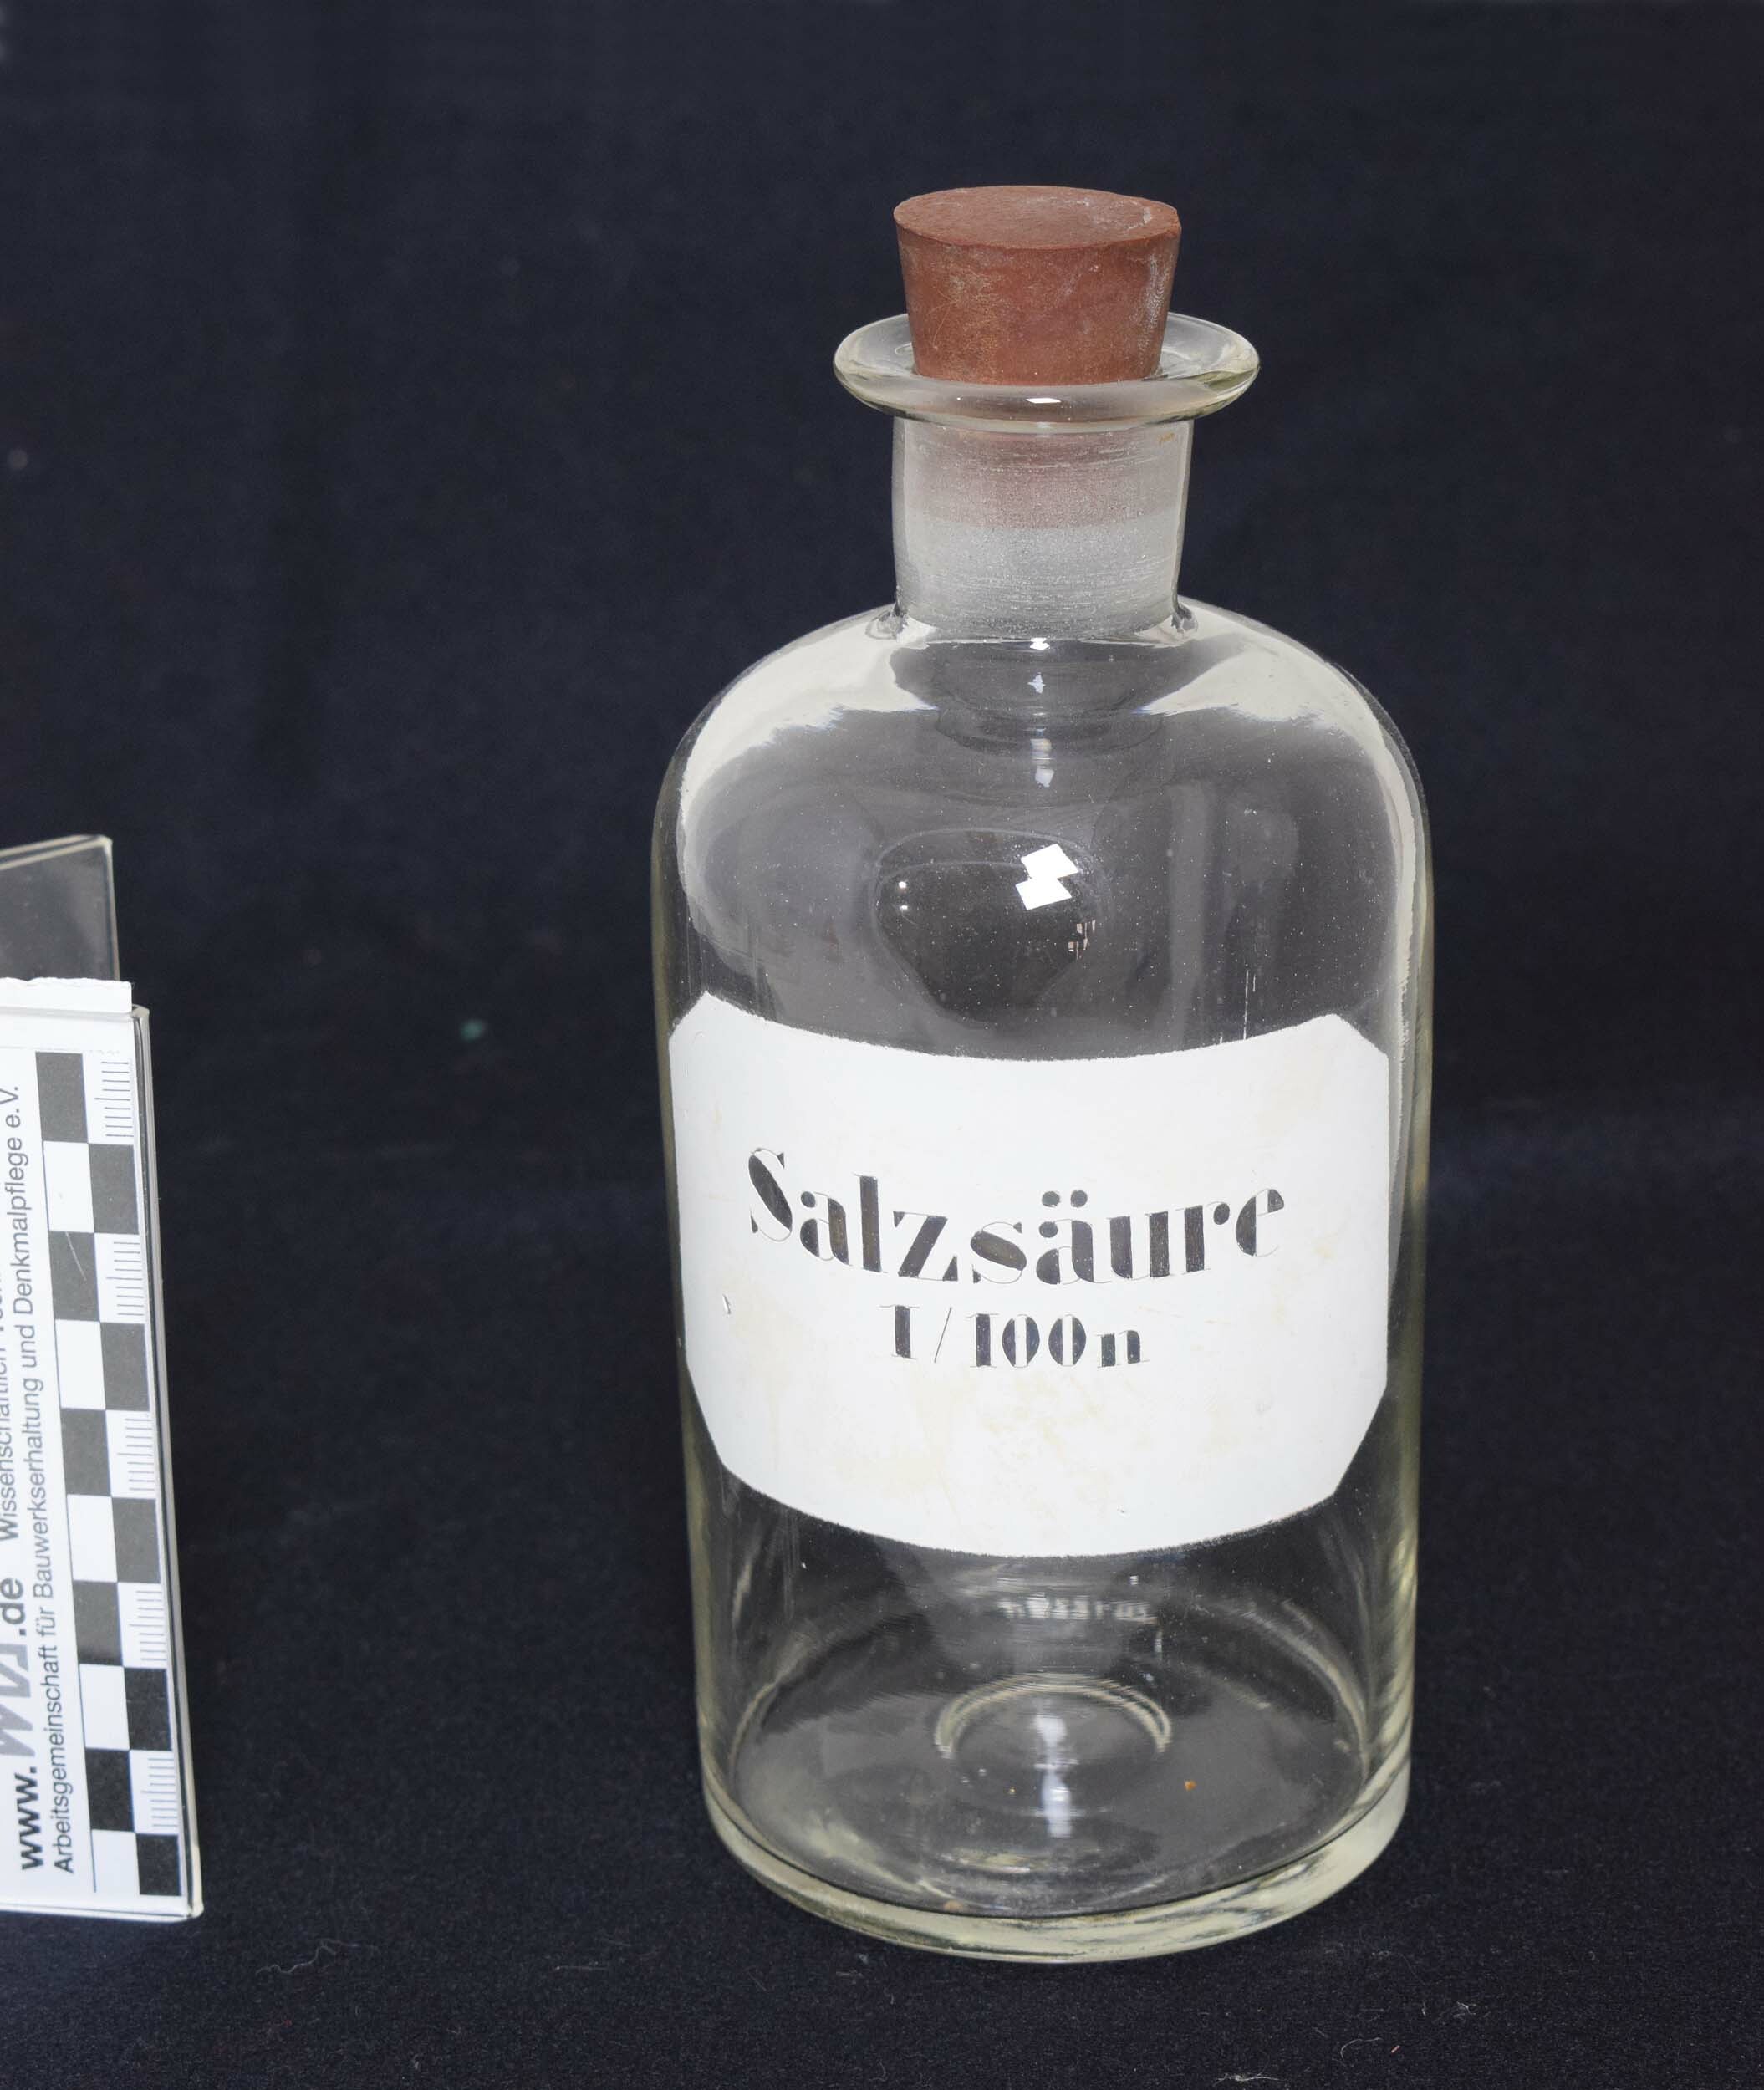 Apothekenflasche "Salzsäure 1/100n" (Heimatmuseum Dohna CC BY-NC-SA)